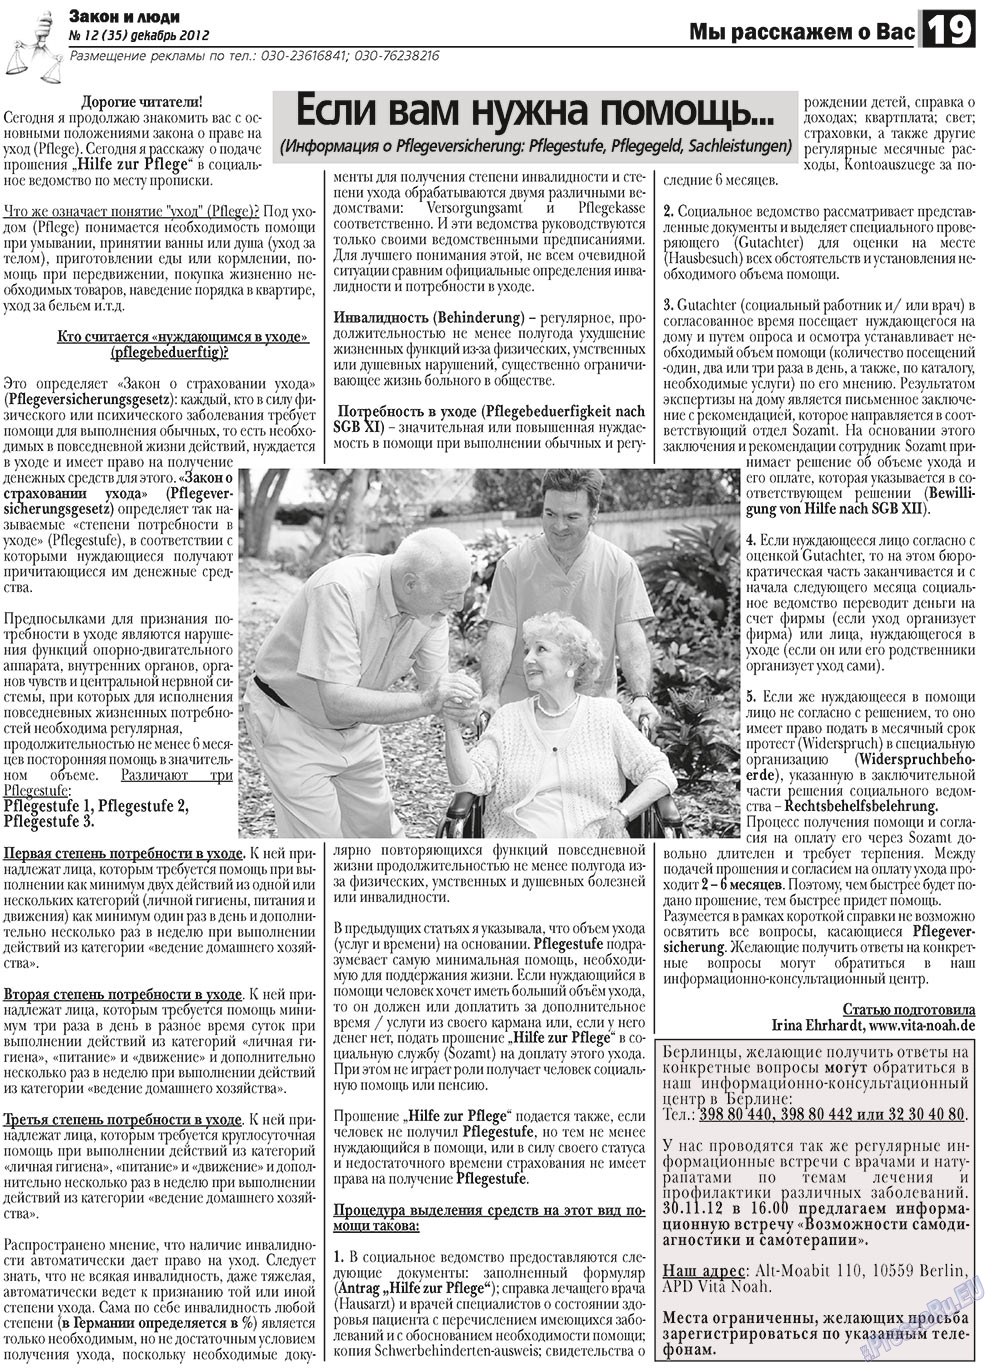 Закон и люди, газета. 2012 №12 стр.19